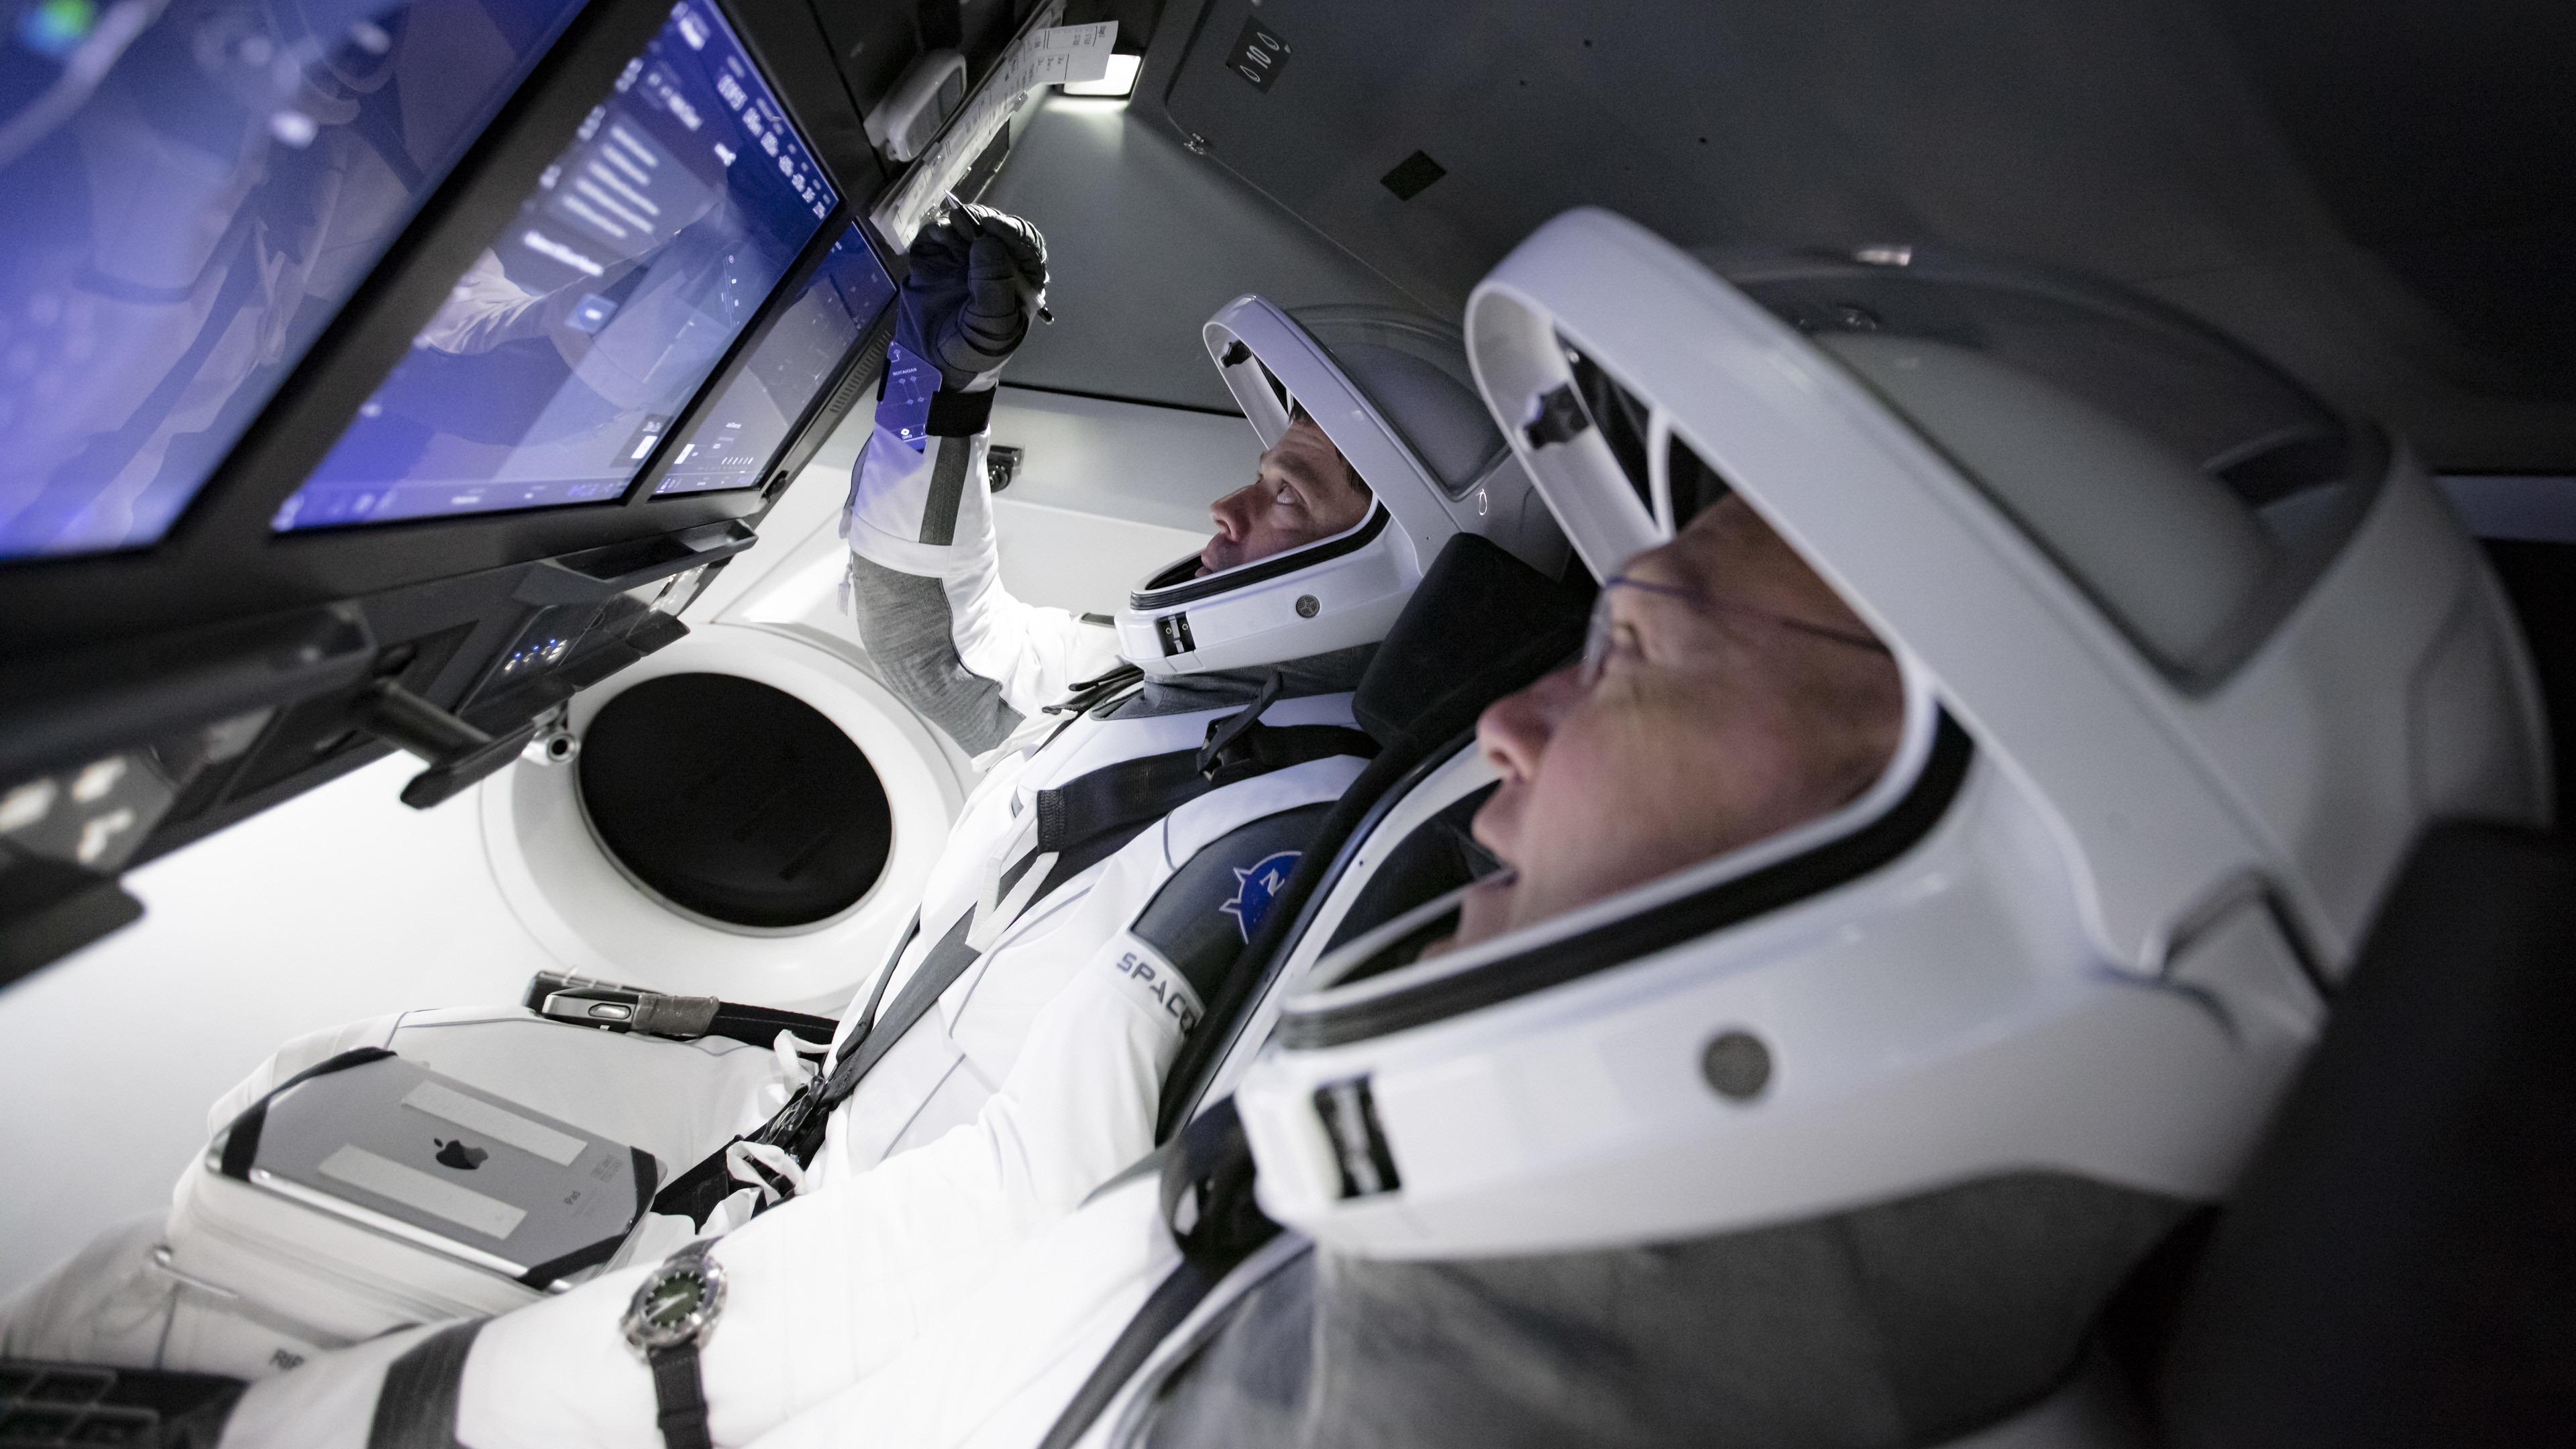 Douglas Hurley i Robert Behnken w symulatorze statku Dragon (Źródło: SpaceX/NASA)